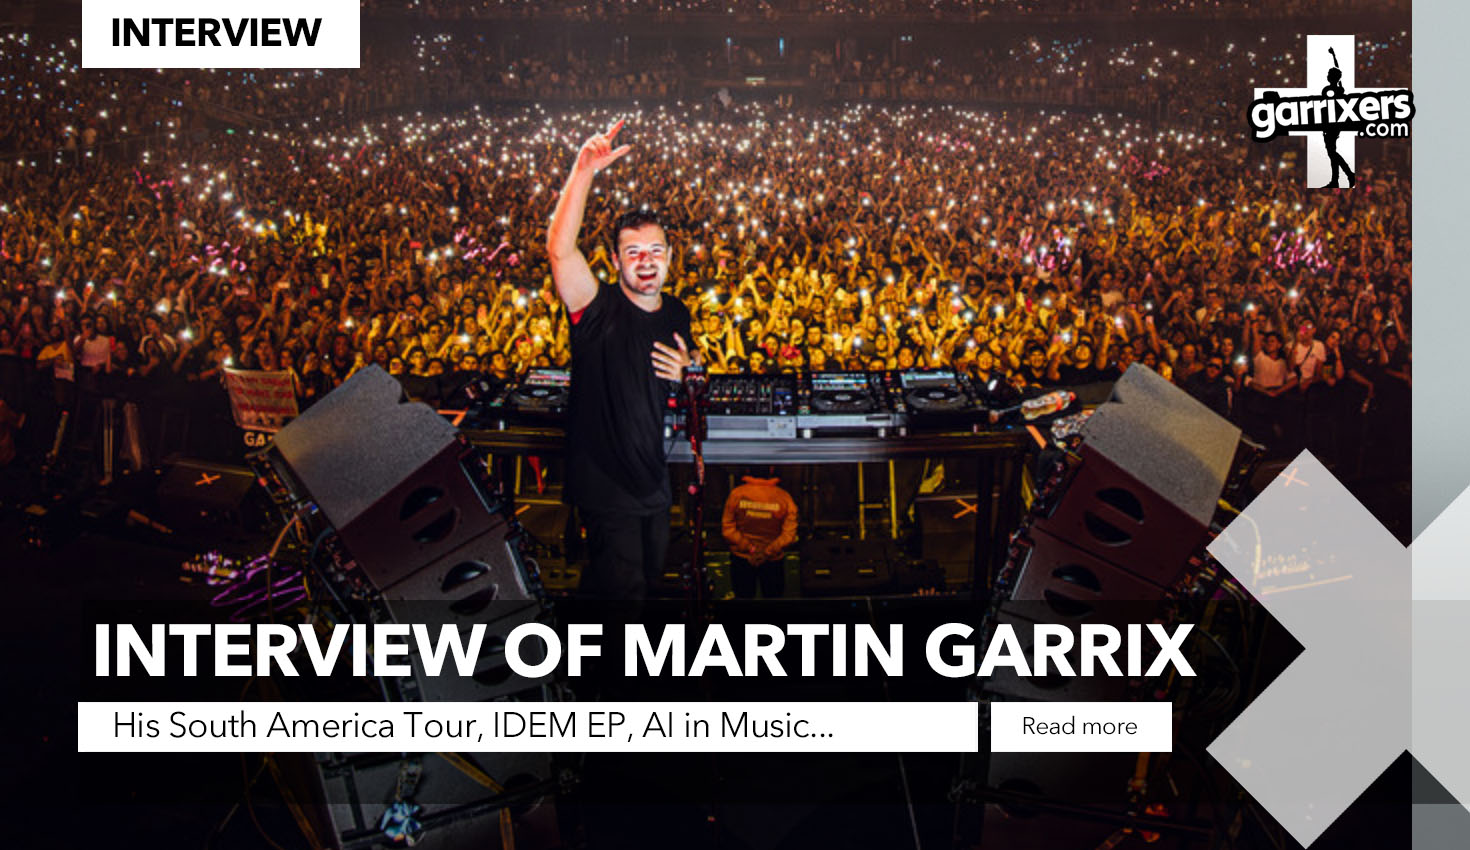 Martin Garrix interview on garrixers.com